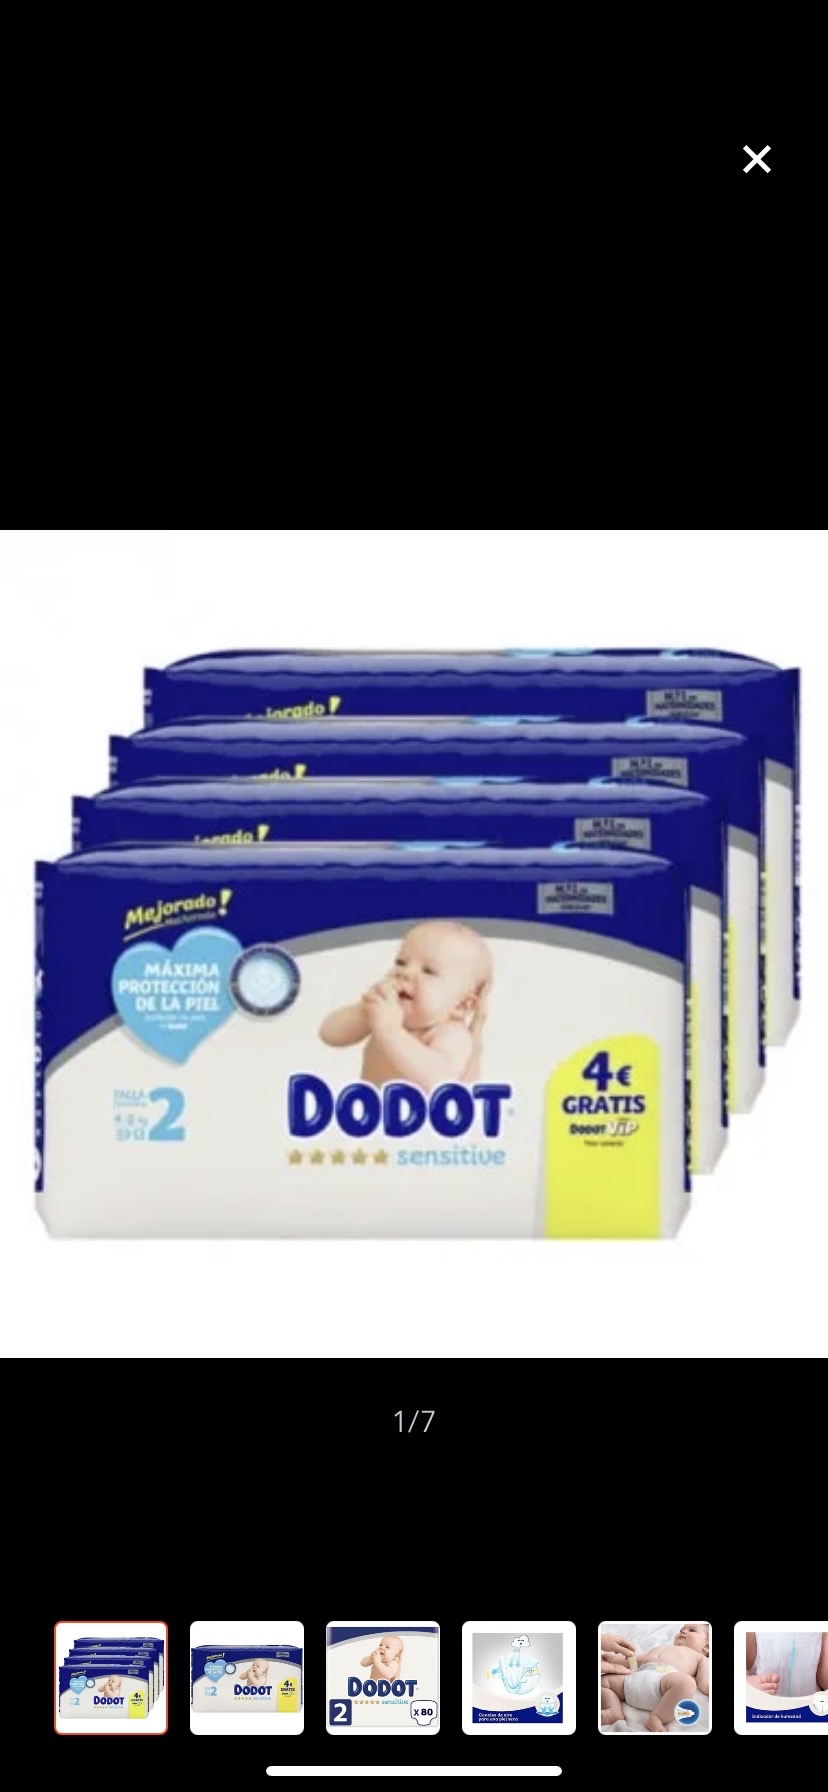 Dodot Pro Sensitive Talla2 36Pañales Piel Sensible del Recién Nacido